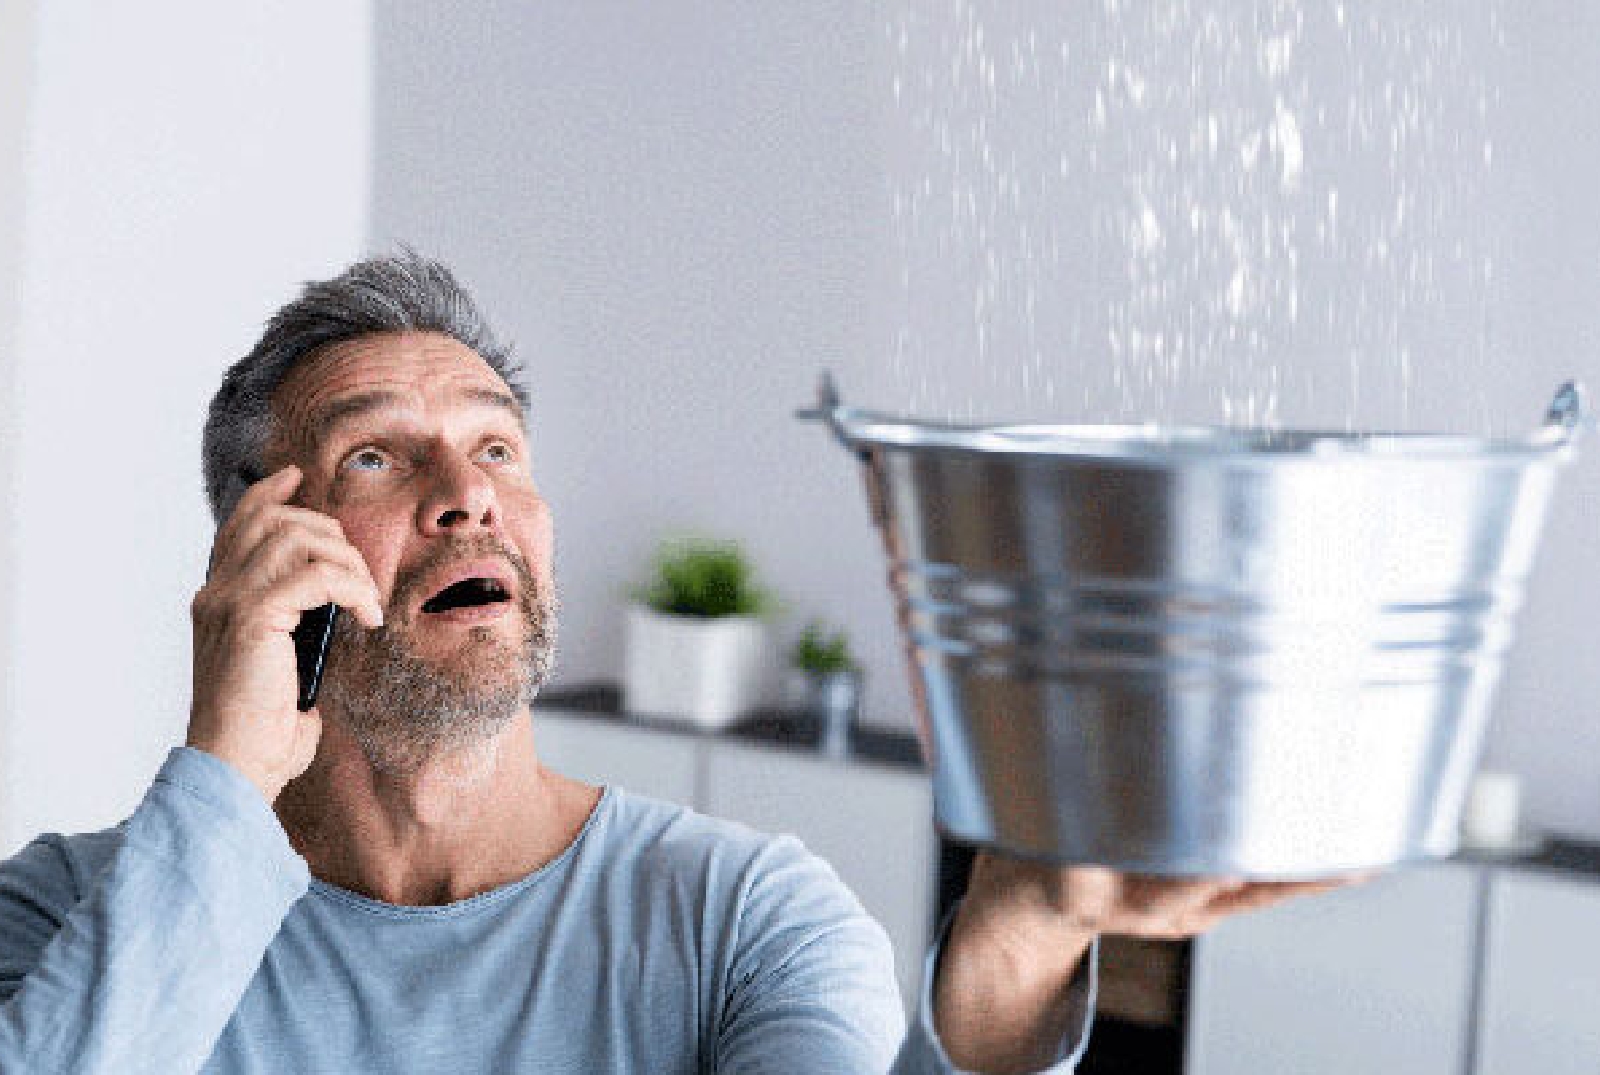 Mann mit einem erschrockenen Gesichtsausdruck und einer Hand mit Handy am rechten Ohr und der anderen Hand mit einem Eimer, der Wasser von oben auffängt